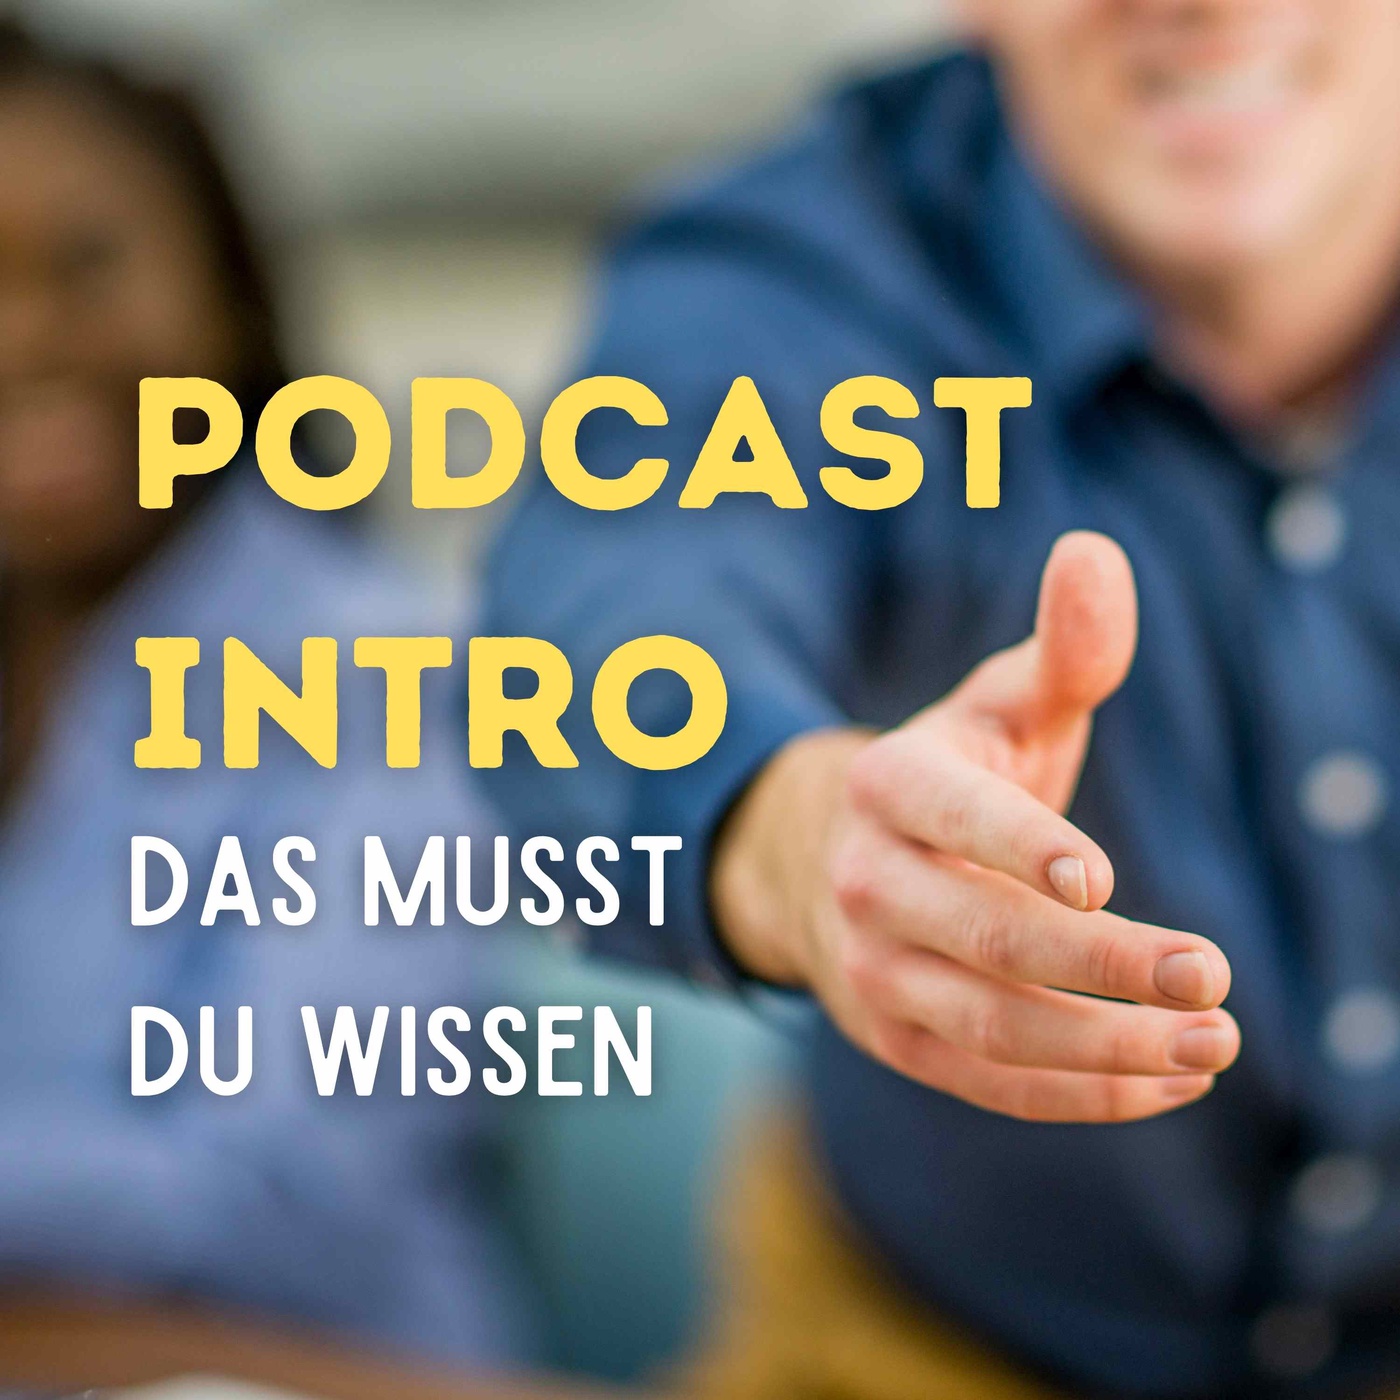 Das Podcast Intro - Das musst du wissen